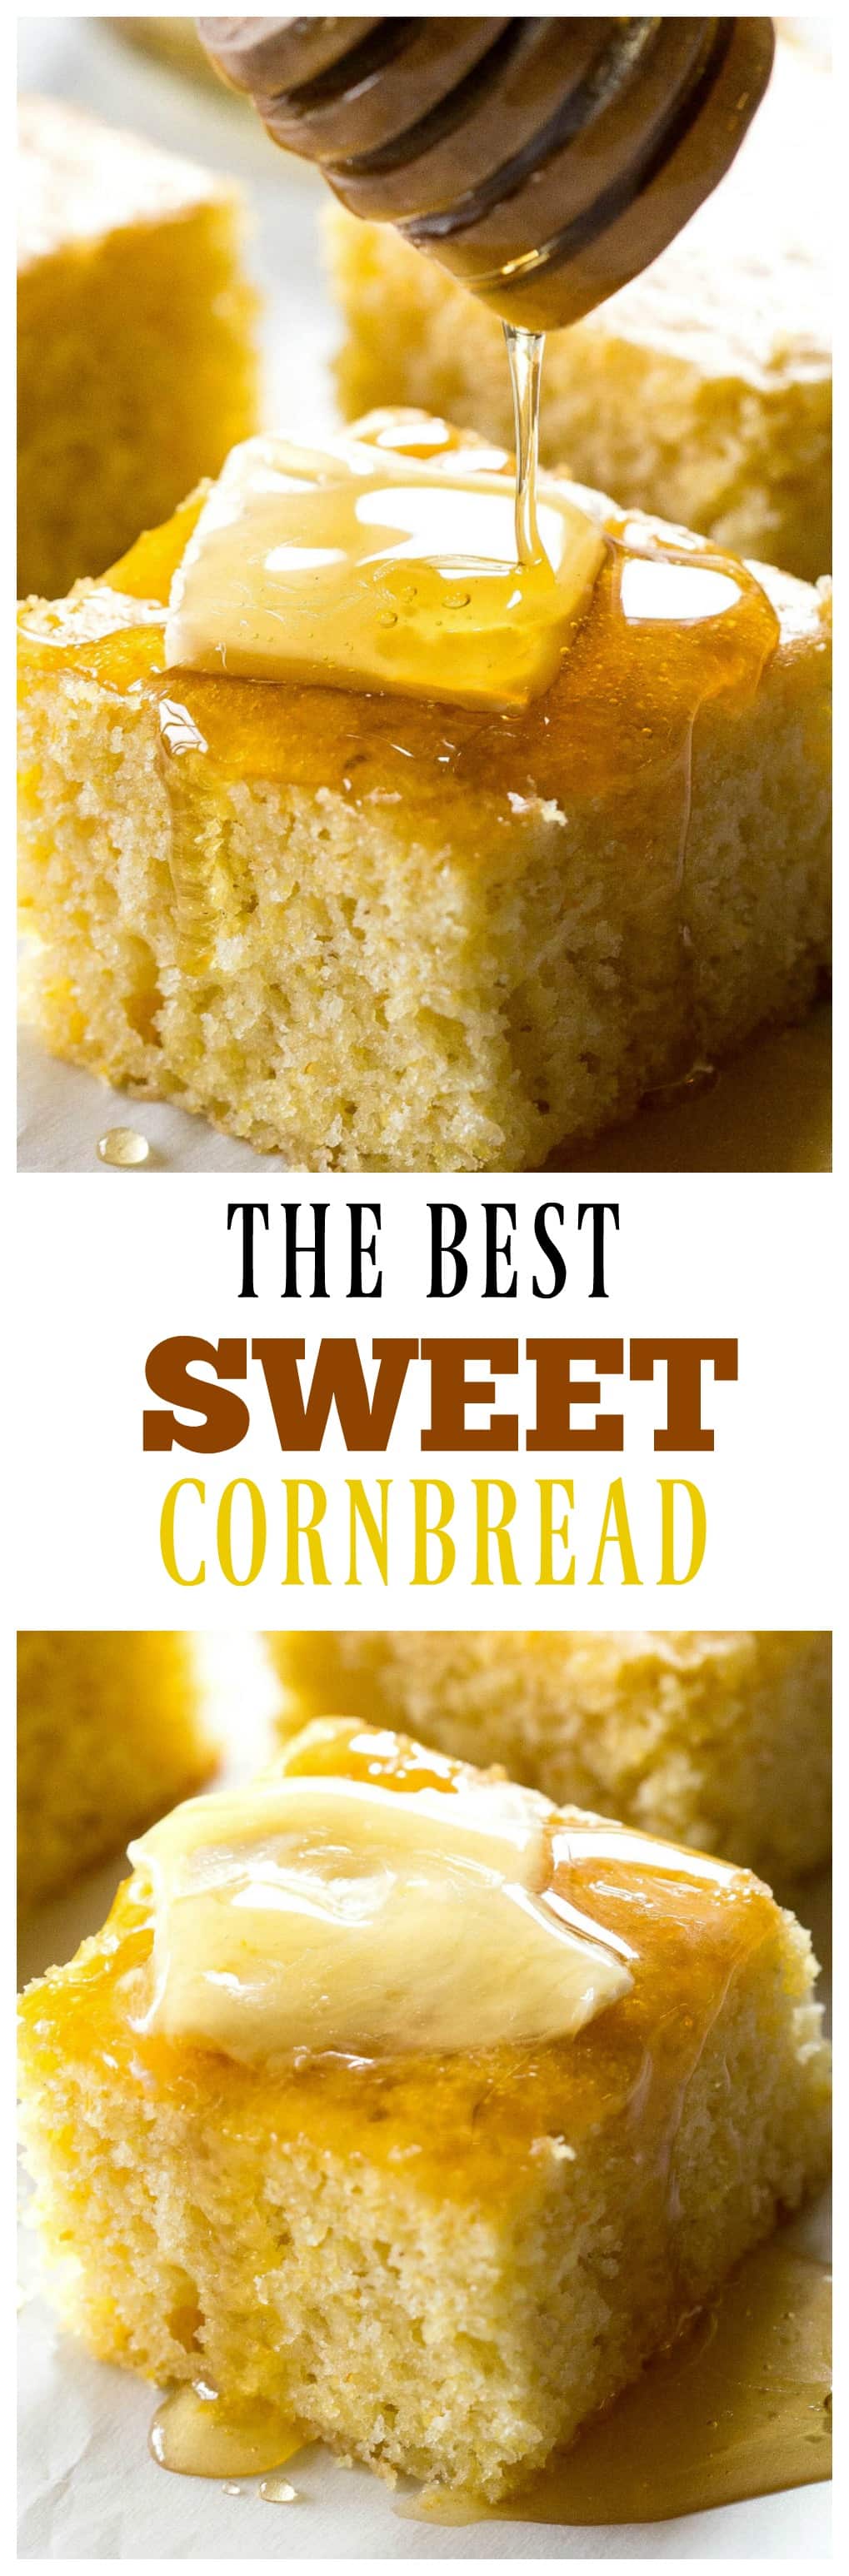 The Best Sweet Cornbread - pão de milho macio e macio que é doce como eu gosto.  #doce #cornbread #receita #facil #chili #side